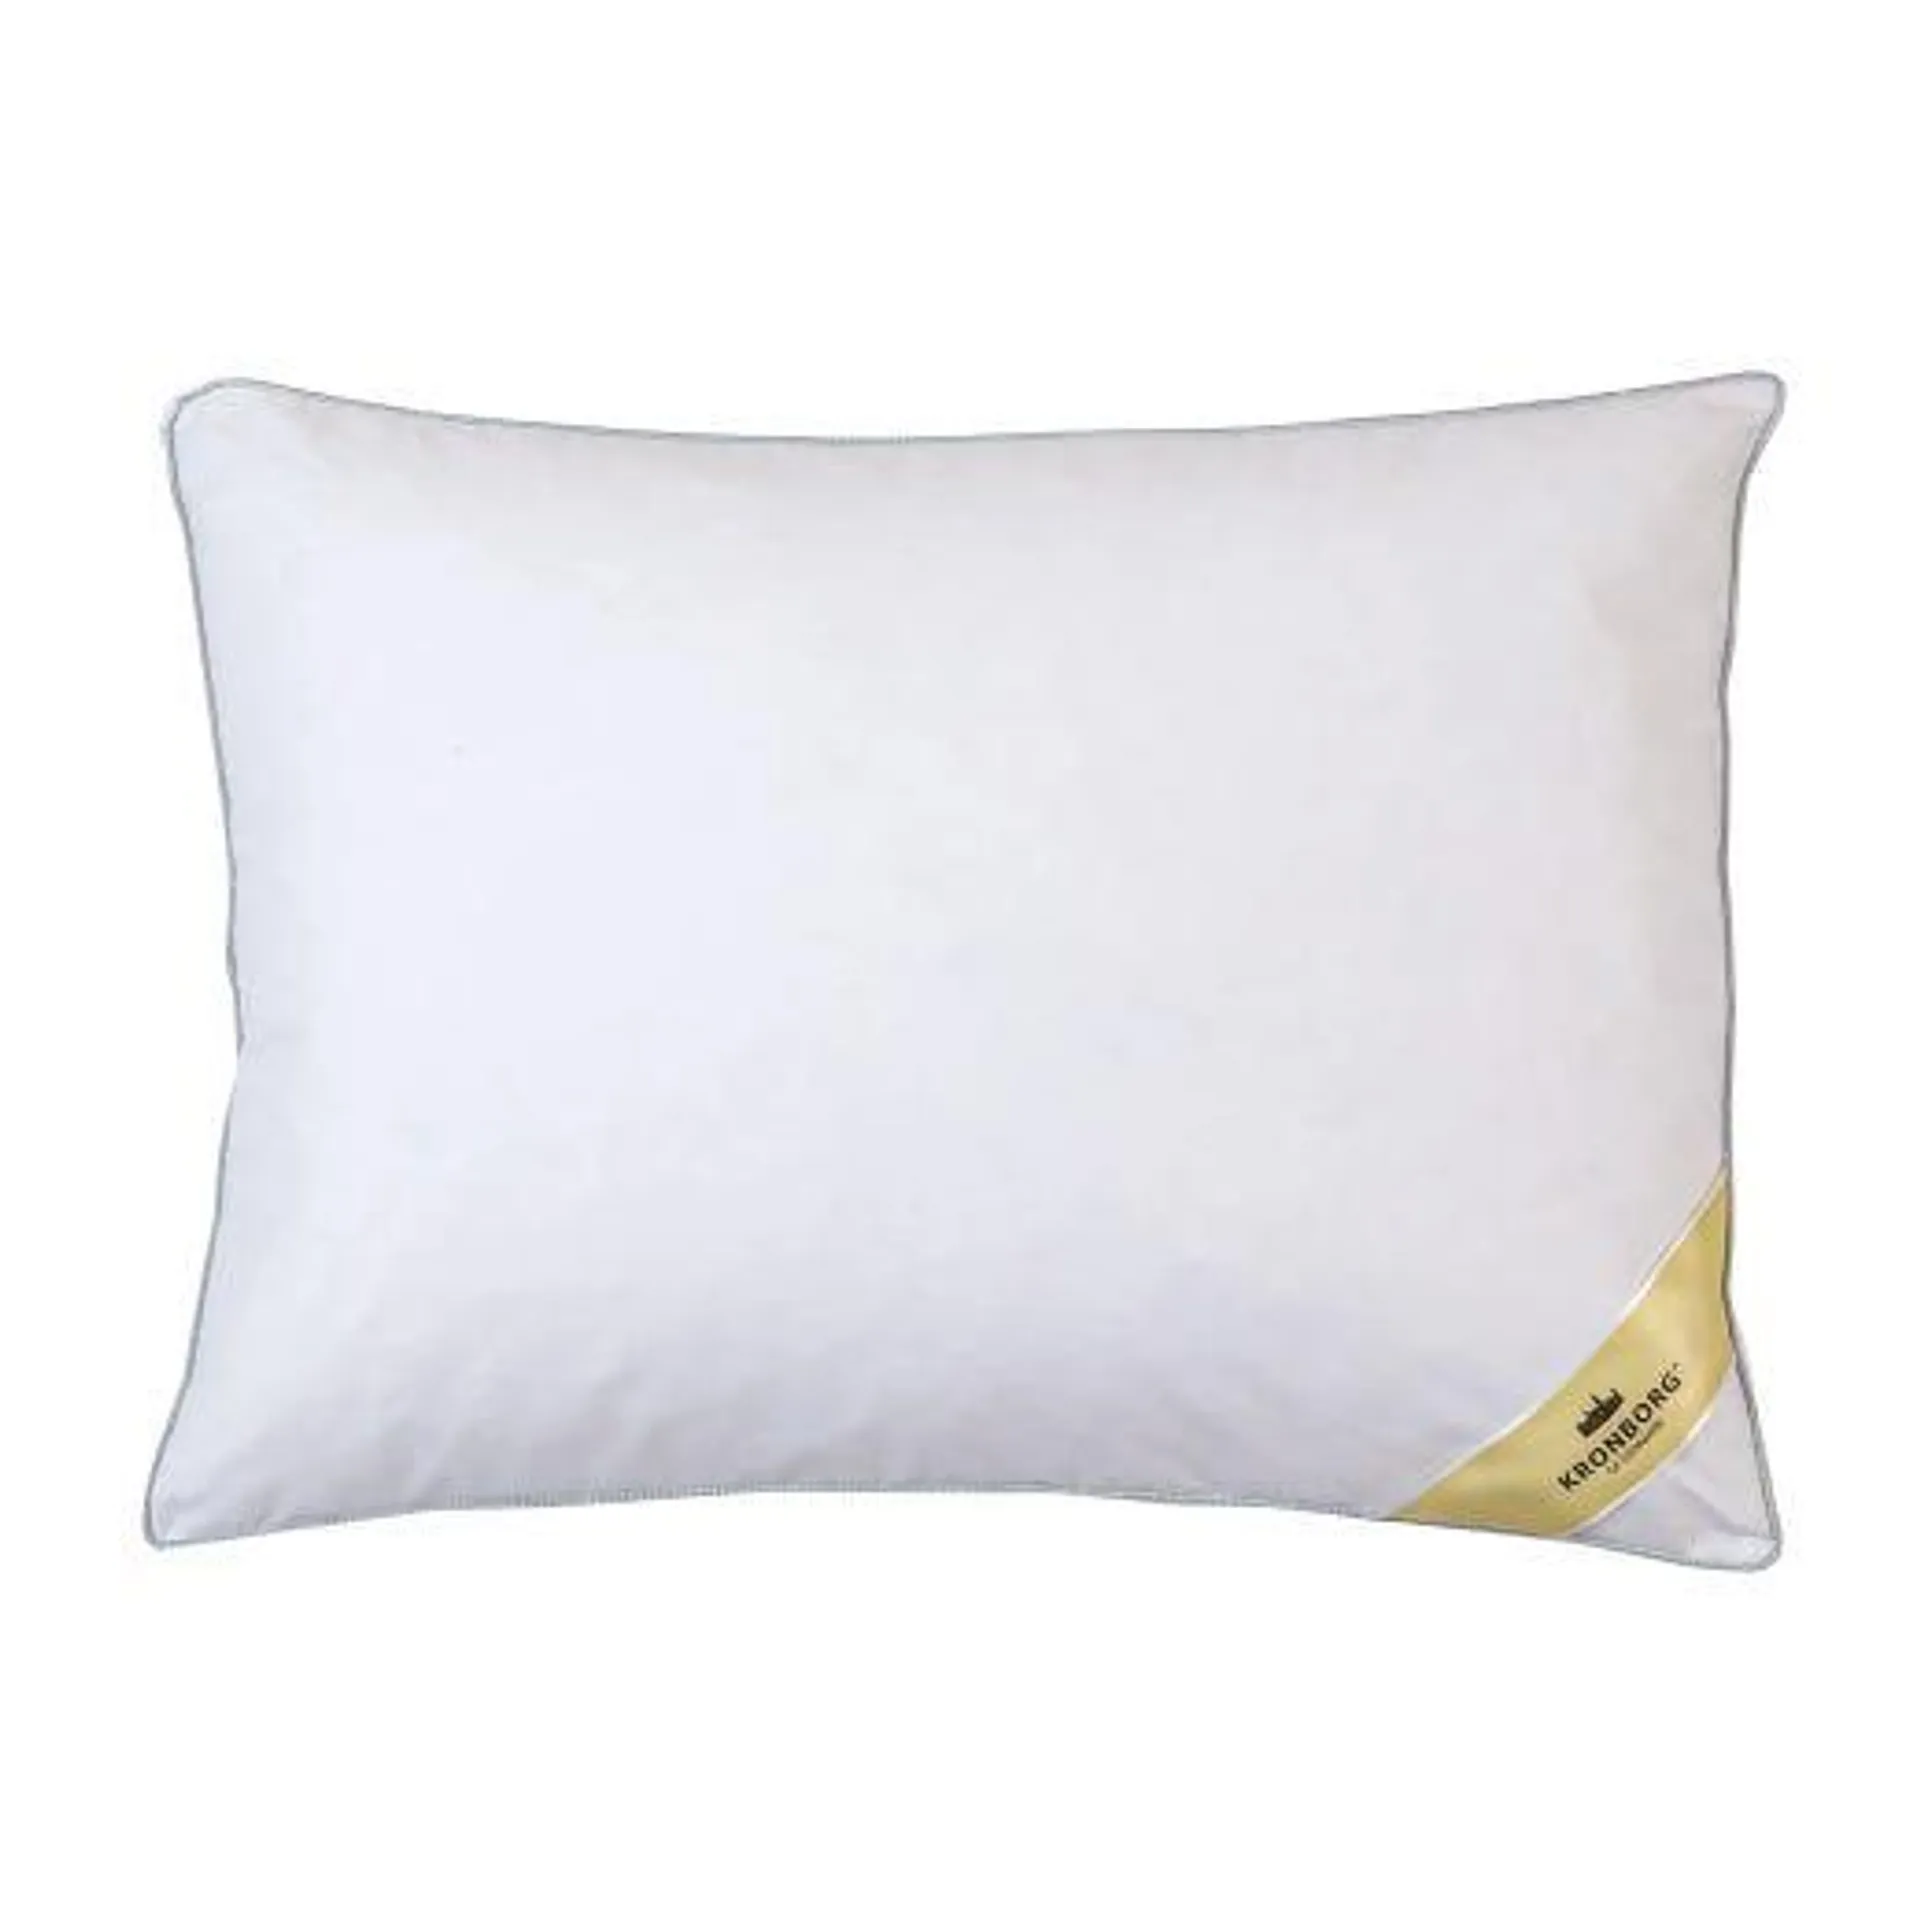 Feather Pillow Medium Support (Queen)